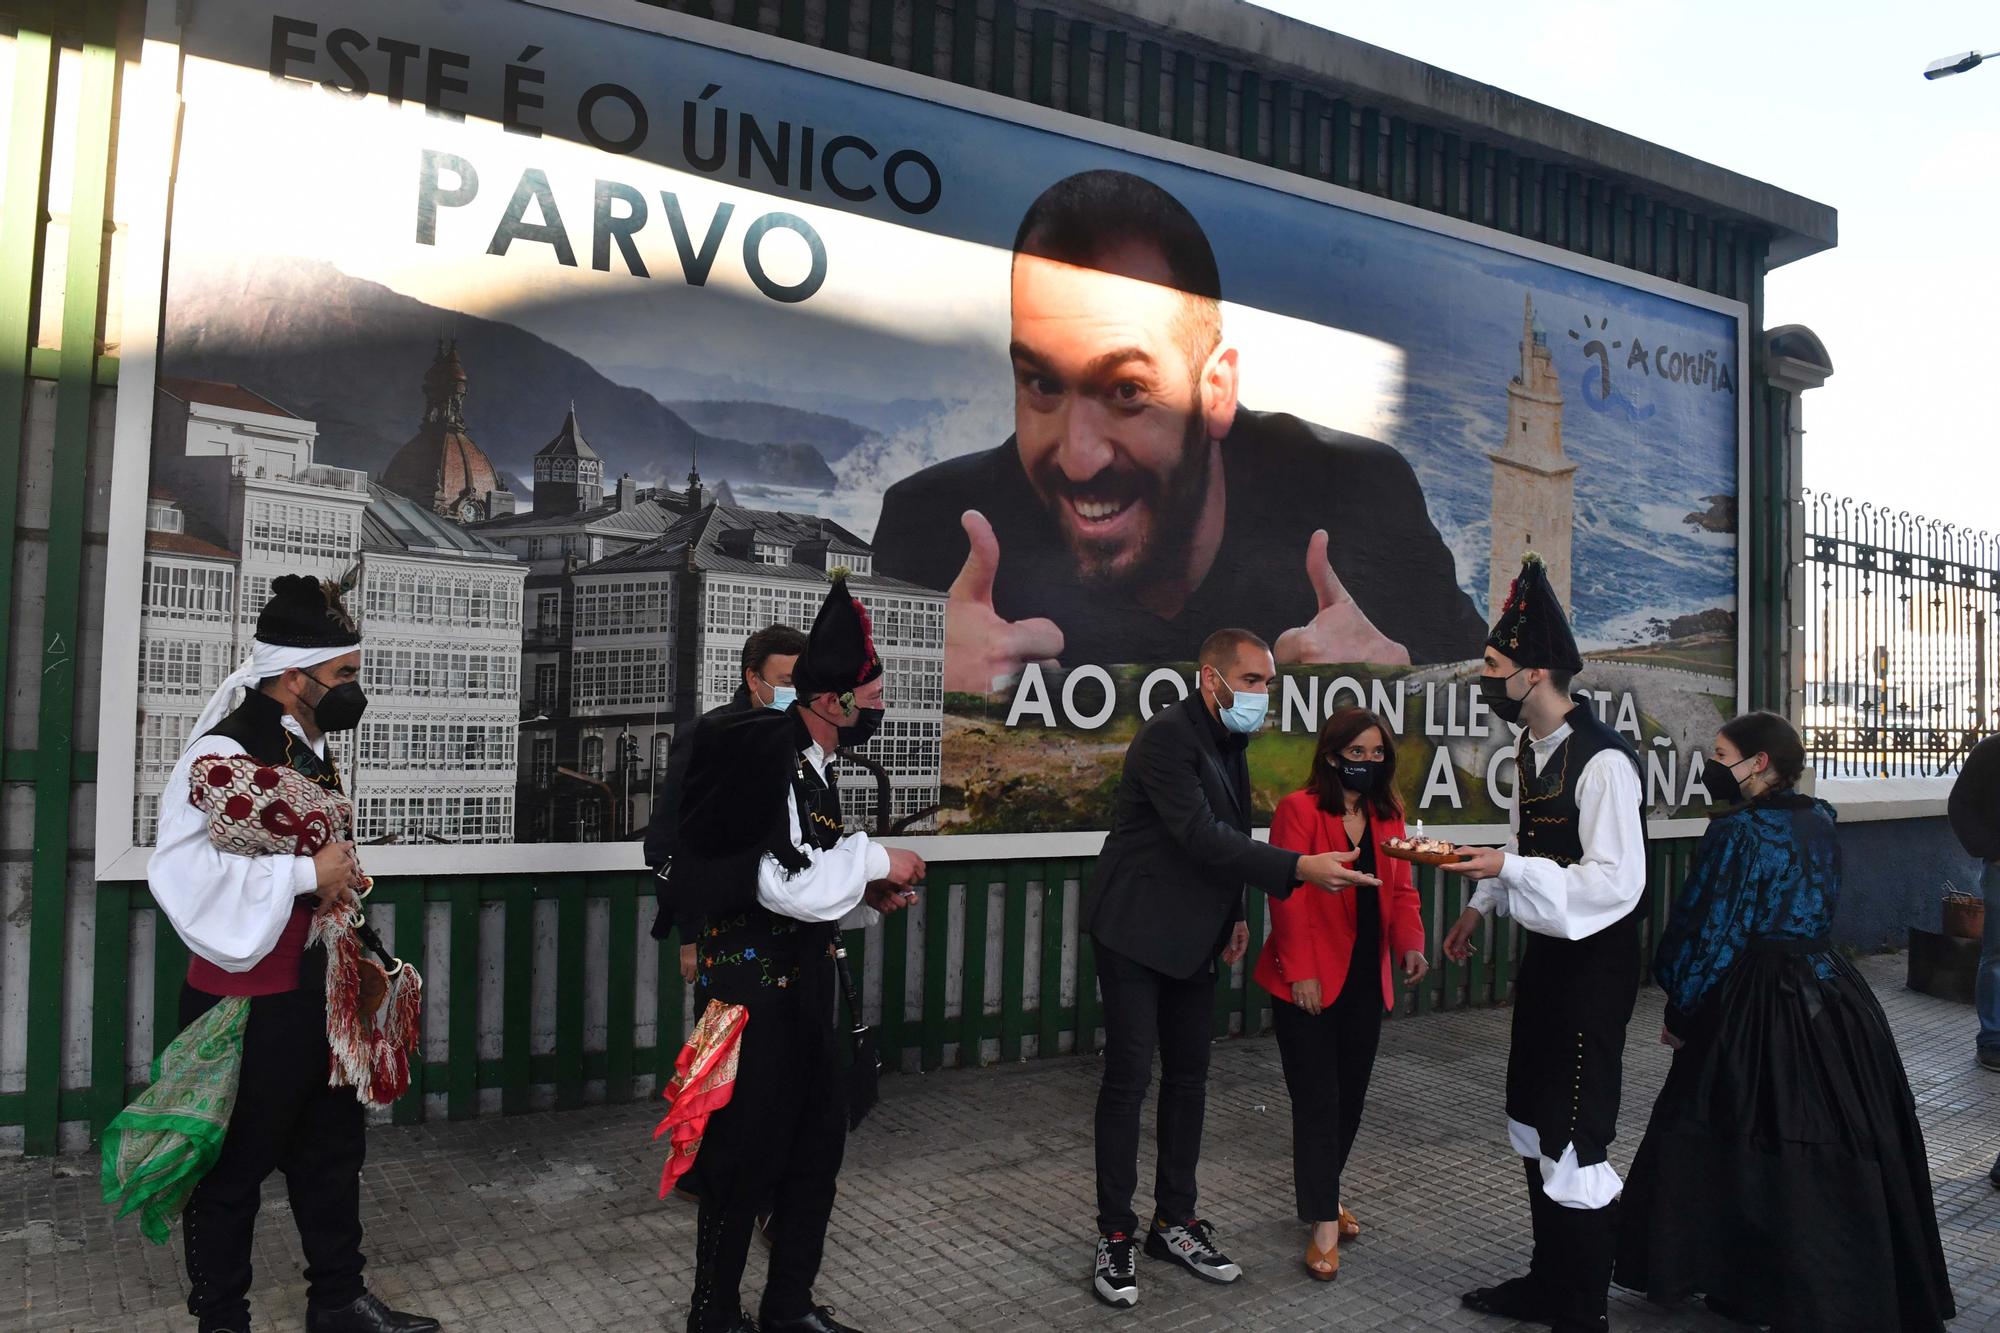 Jorge Ponce inaugura en A Coruña la valla que le convierte en 'el único tonto al que no le gusta A Coruña'